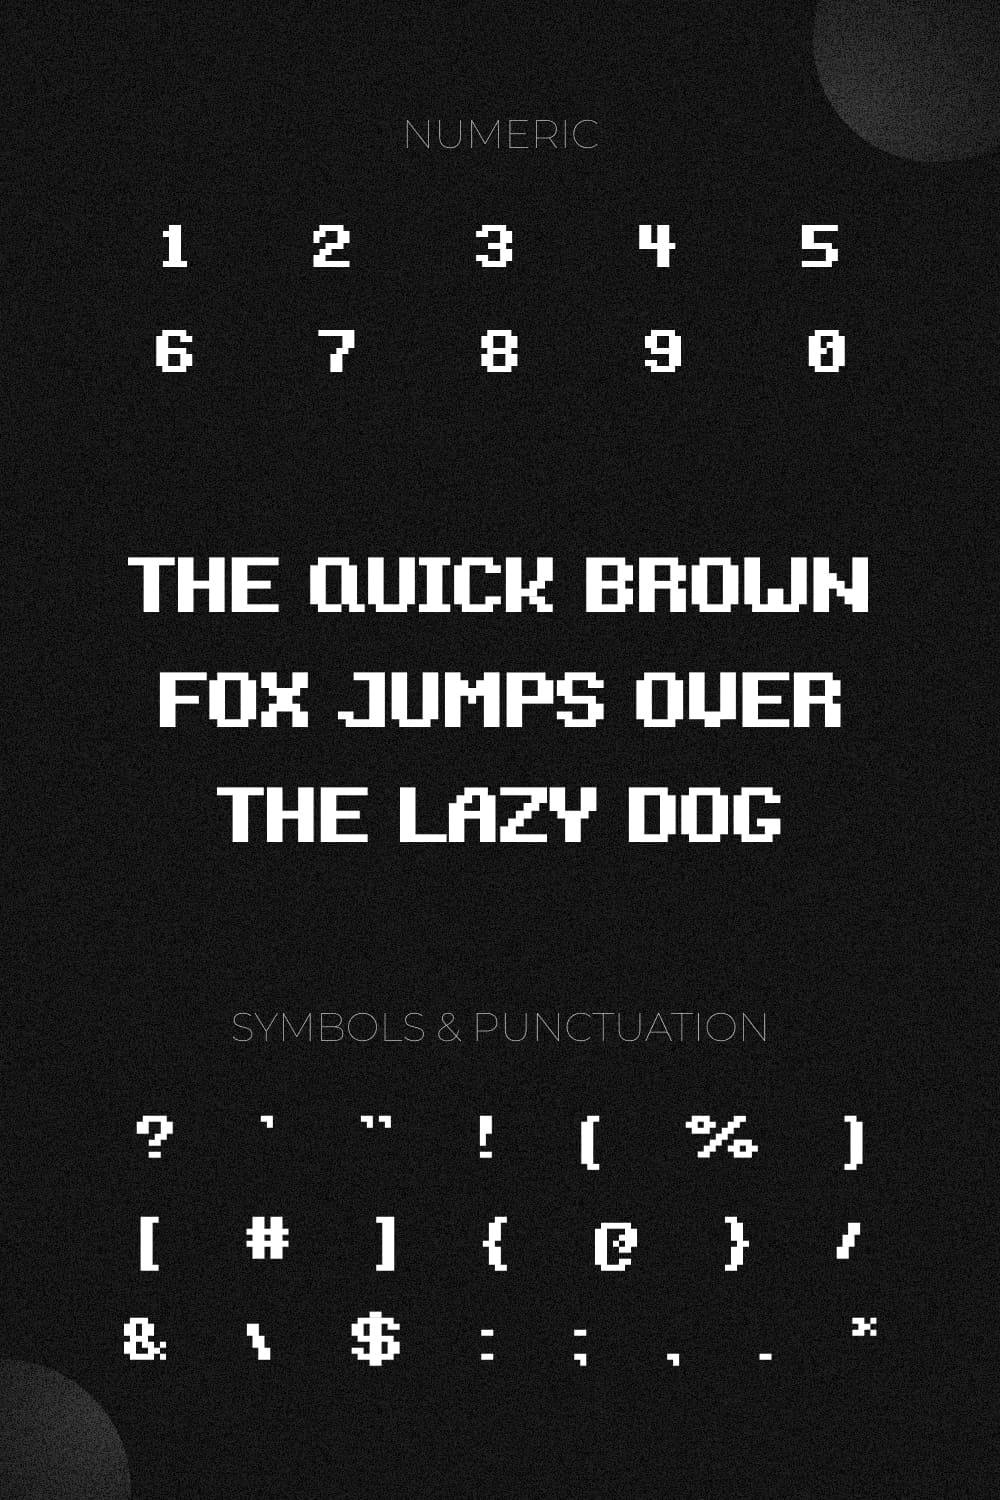 Numeric, symbols & punctuation.